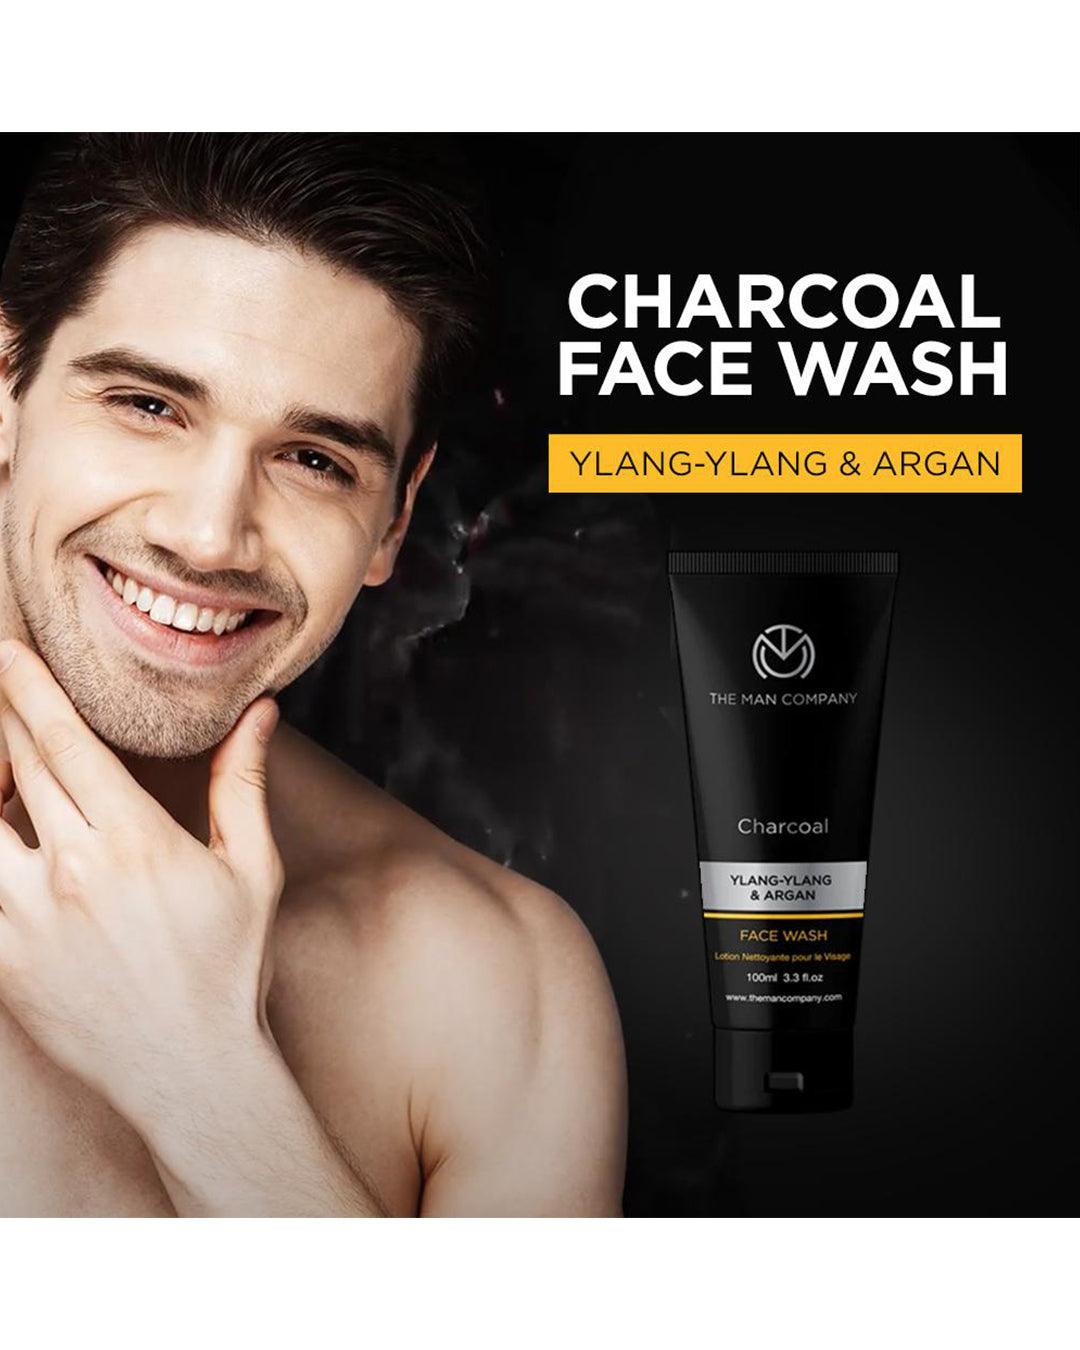 The Man Company - Charcoal Face Wash Ylang Ylang And Argan 100 mL - MARKET 99